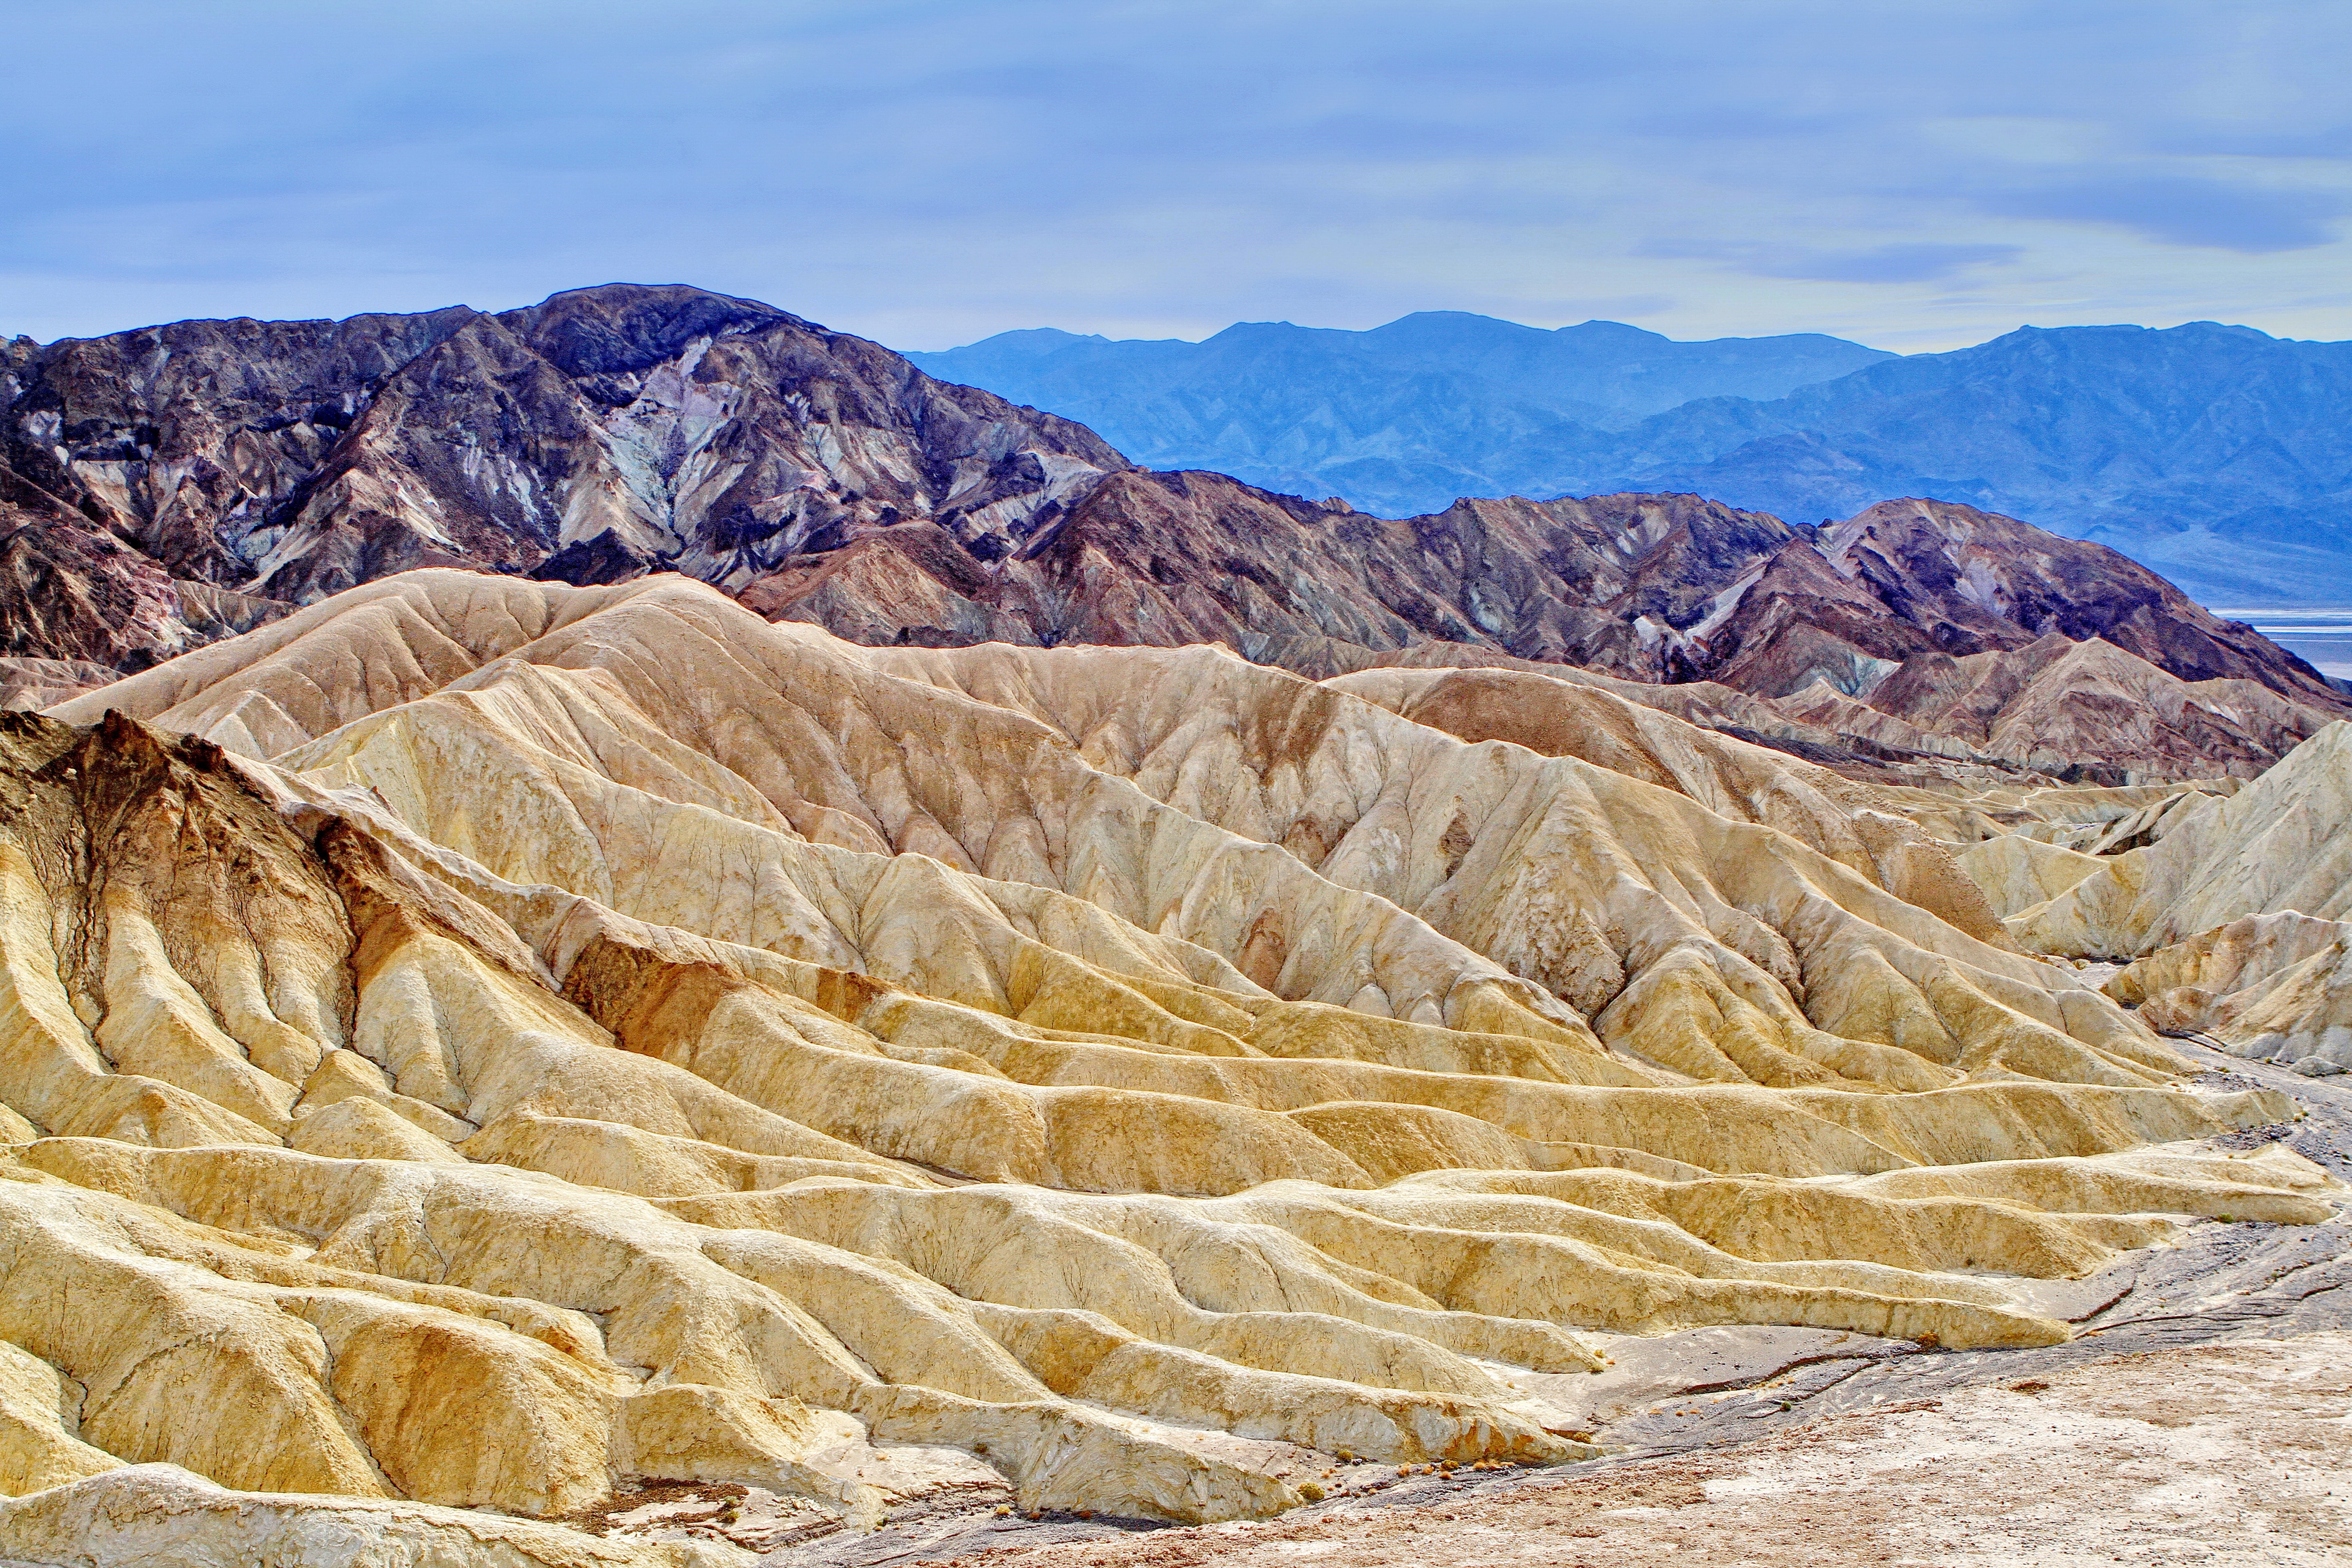 Death Valley, USA.